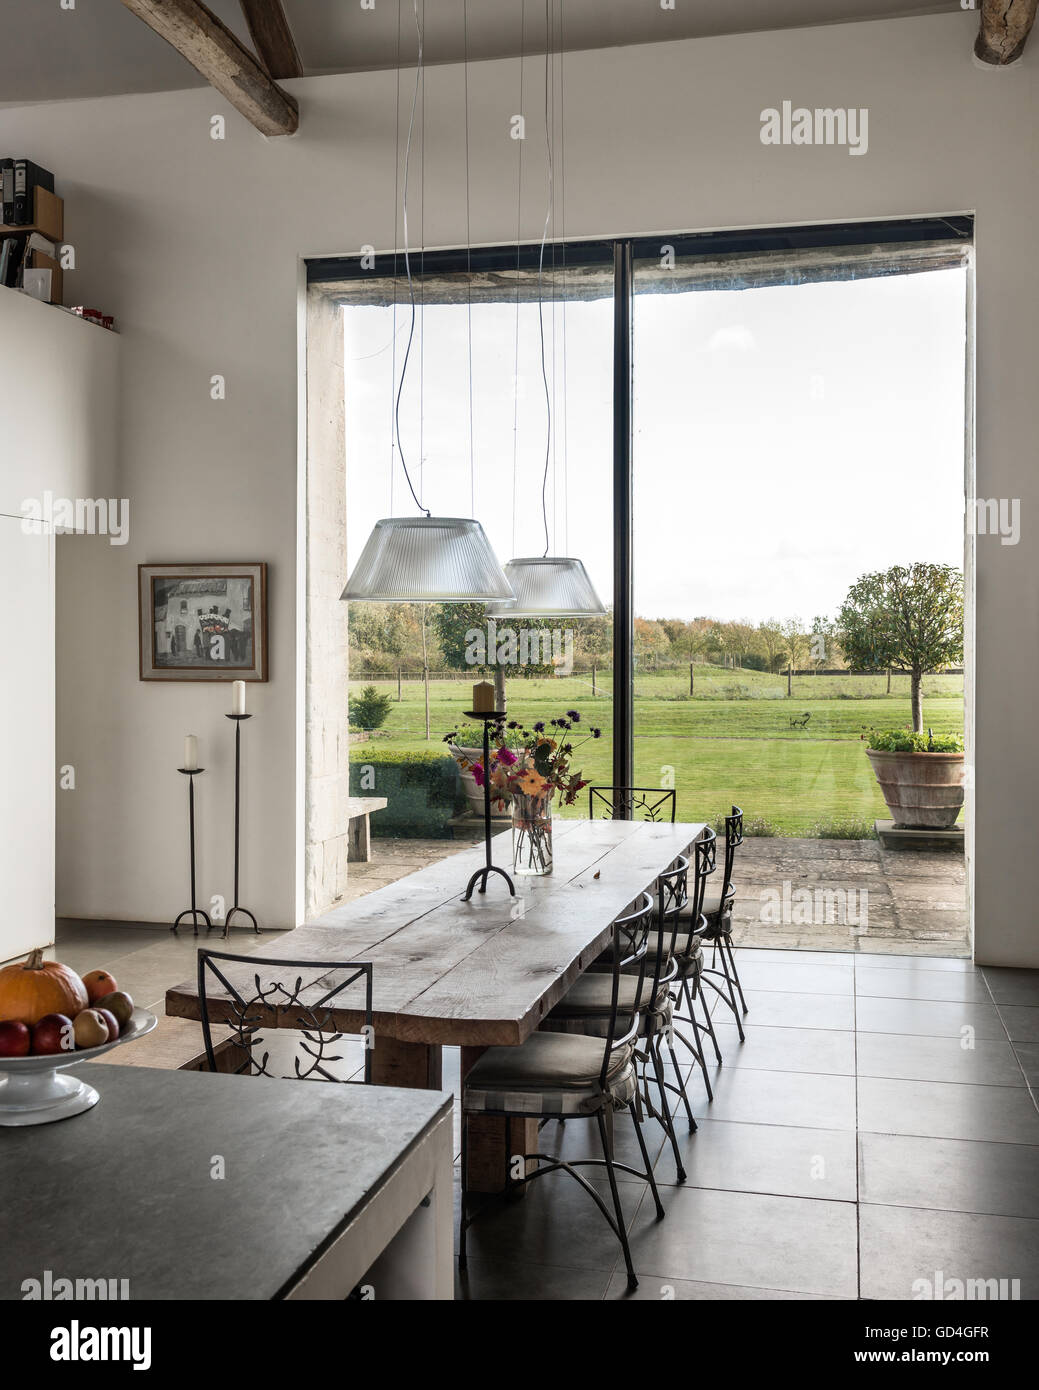 Cuisine île calcaire en plan ouvert cuisine-salle à manger avec grande fenêtre Banque D'Images